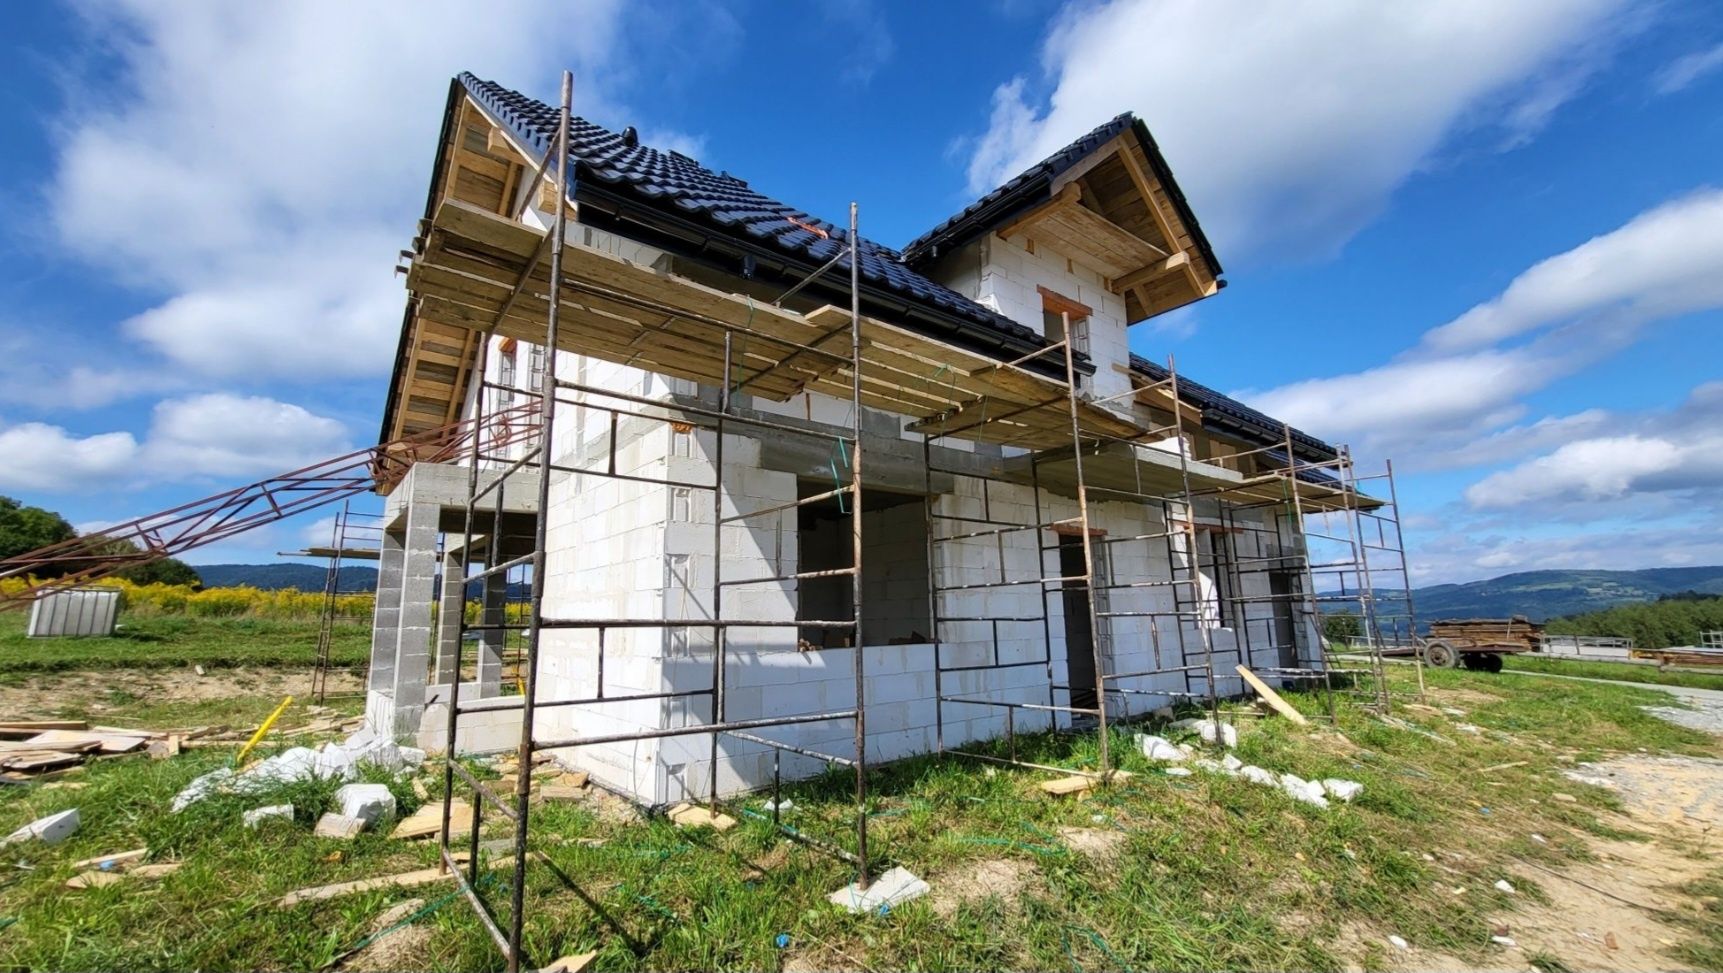 Budowa domów usługi budowlane hale fundamenty remonty przebudowy